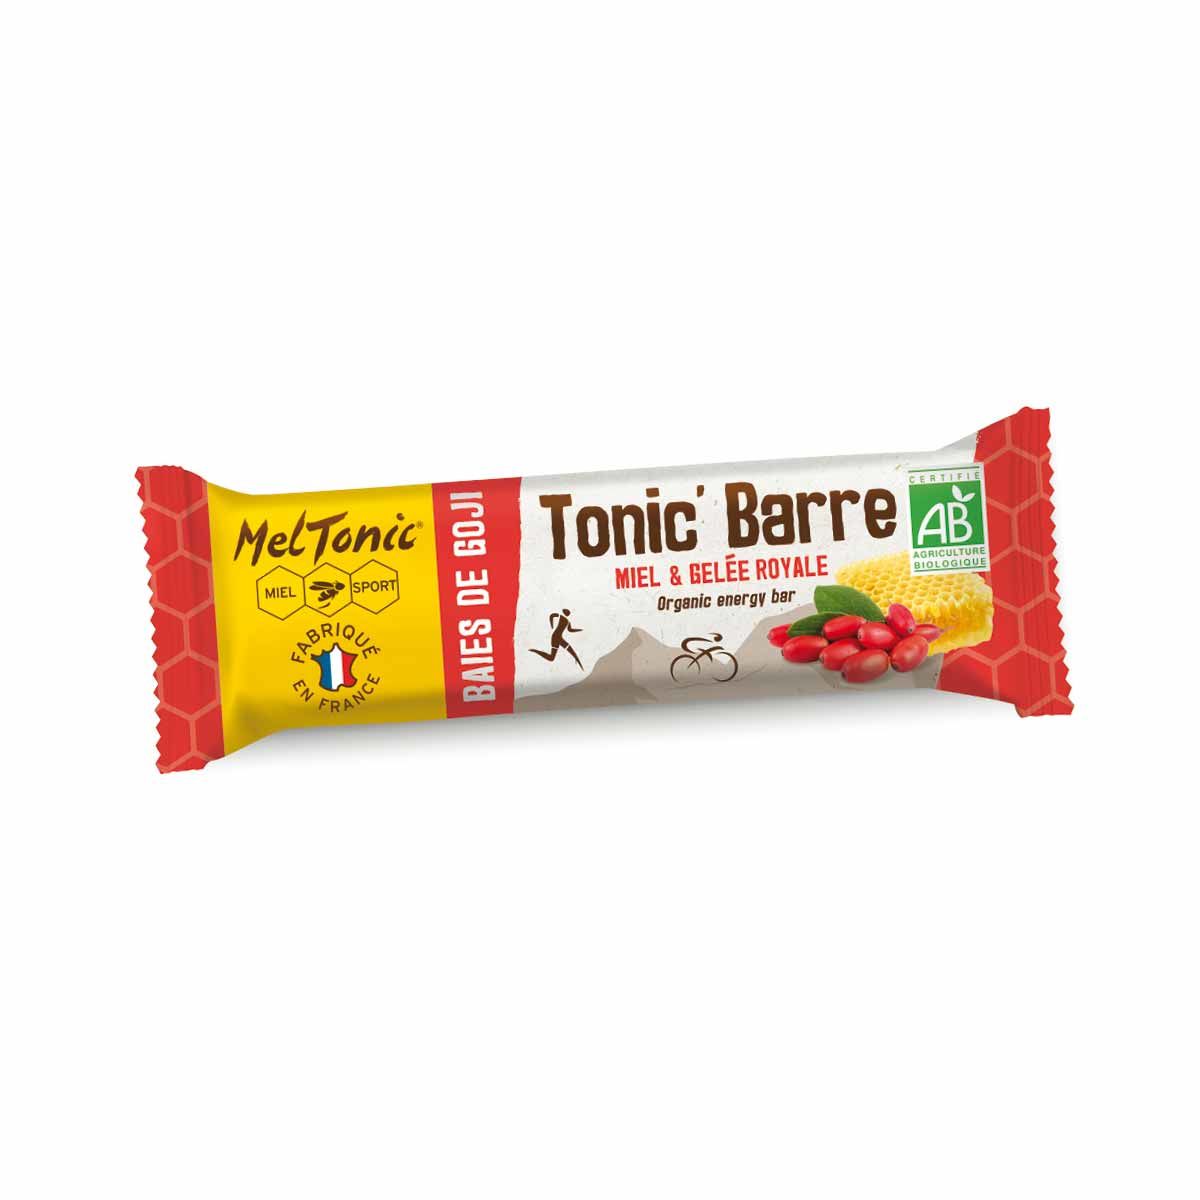 Meltonic organic energy bar - Honey and goji berries